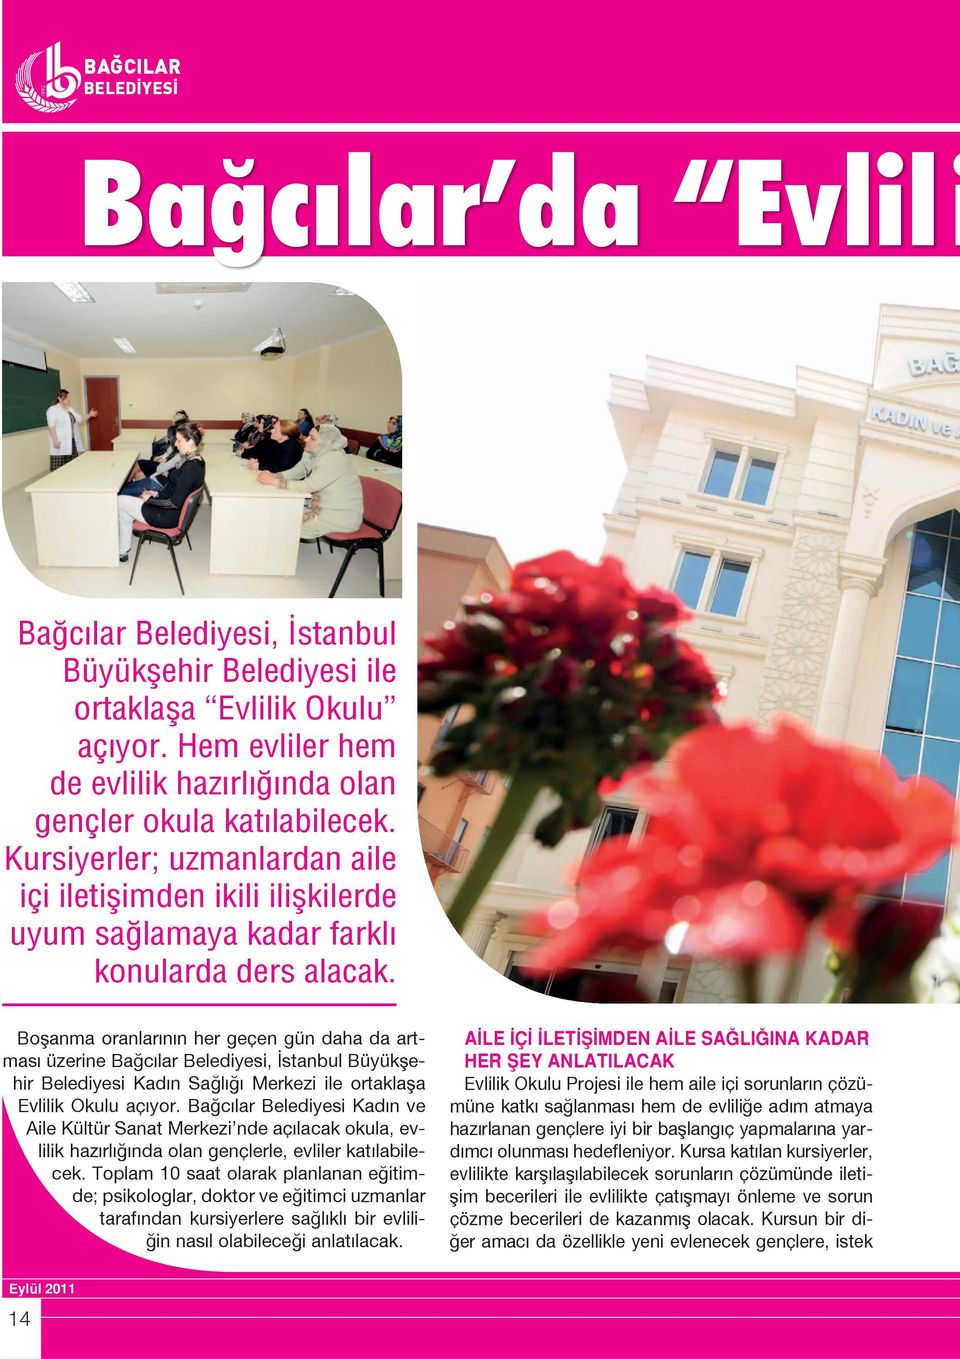 Boşanma oranlarının her geçen gün daha da artması üzerine Bağcılar Belediyesi, İstanbul Büyükşehir Belediyesi Kadın Sağlığı Merkezi ile ortaklaşa Evlilik Okulu açıyor.